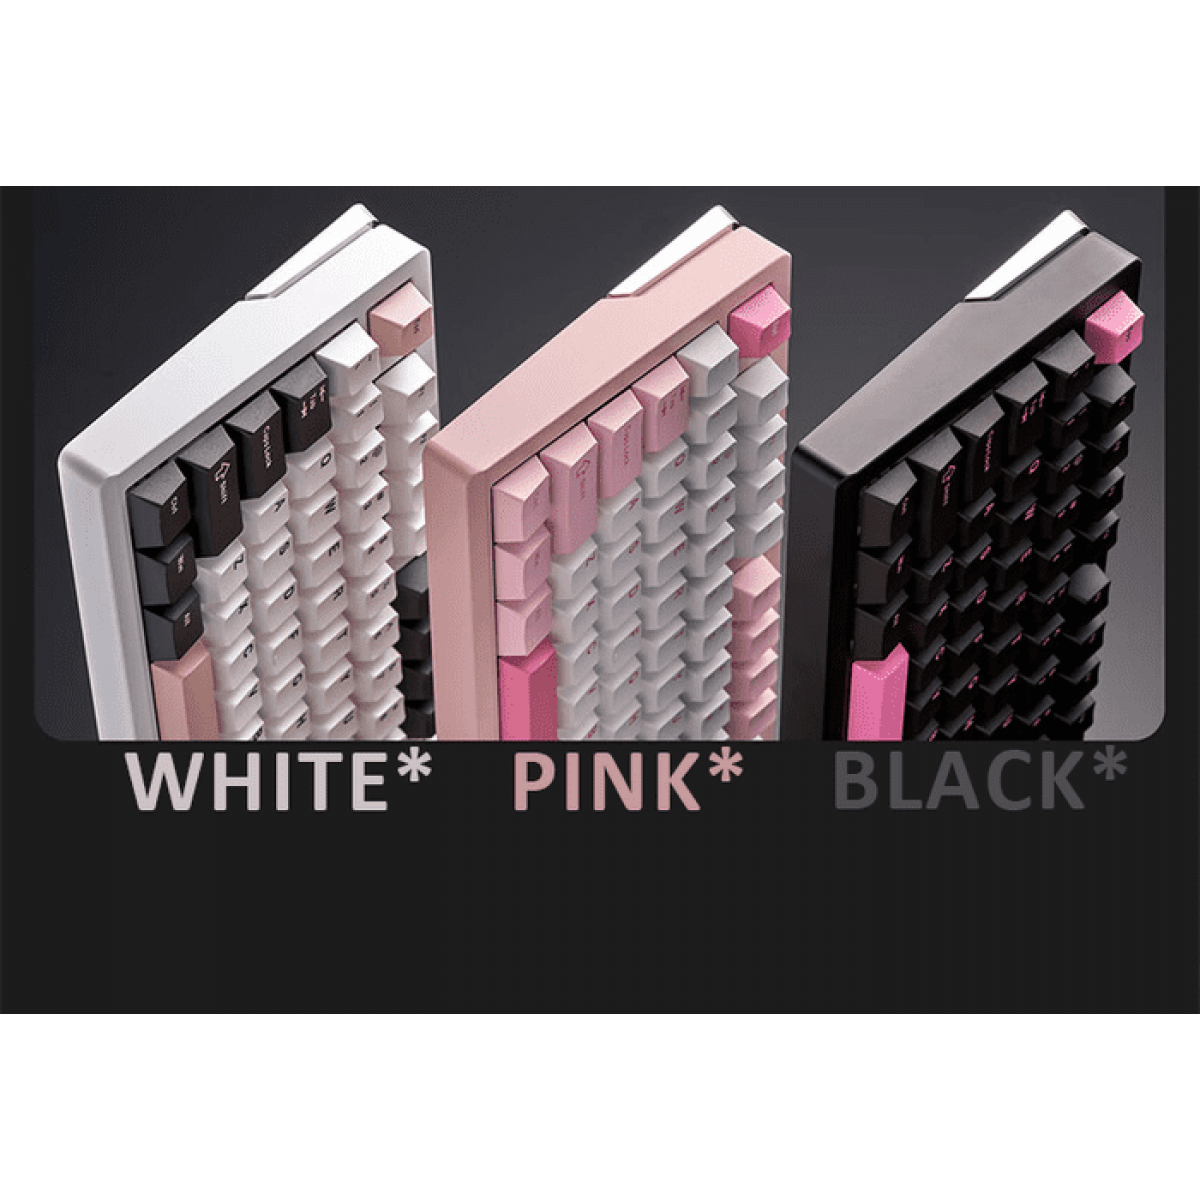 Bàn phím VGN VXE75 Trans Pink | Không dây - Nhôm - RGB